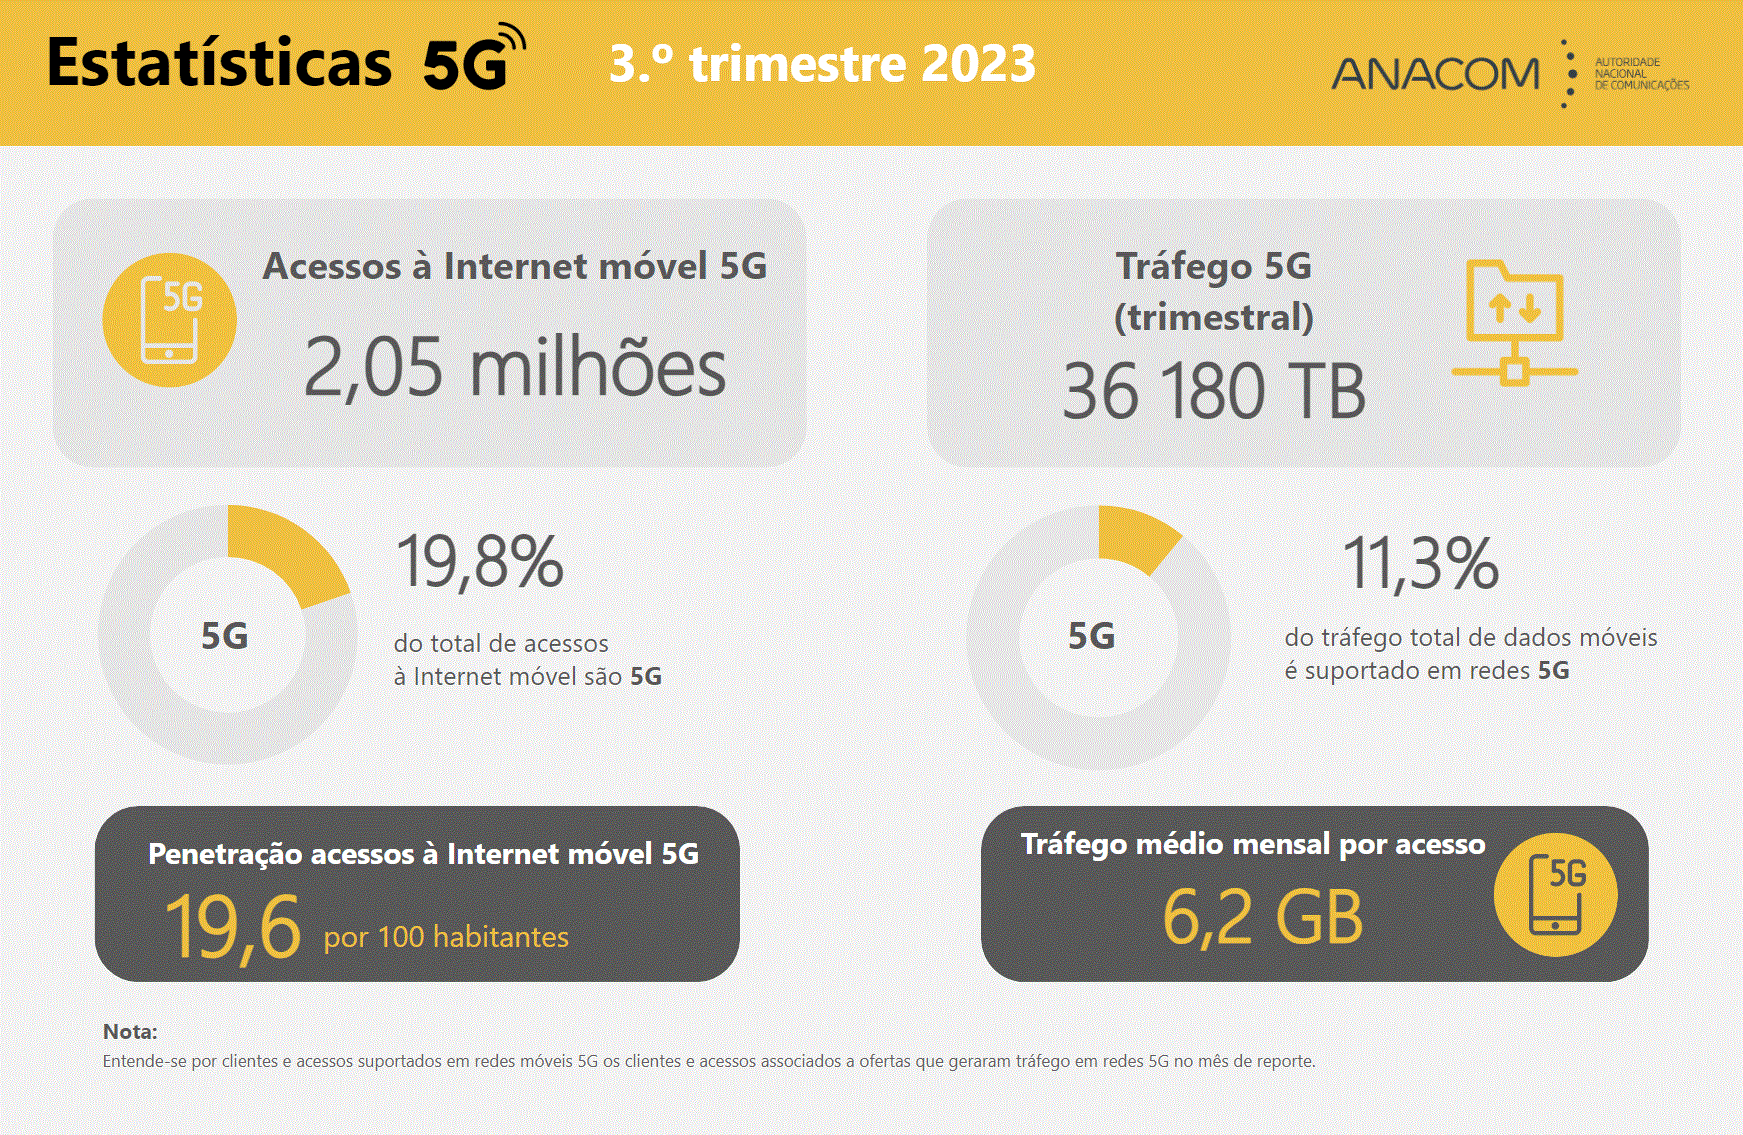 Durante o 3.º trimestre de 2023, o tráfego total nas redes 5G atingiu mais de 36 mil TB, correspondendo a uma média mensal de 6 GB por utilizador de Internet móvel 5G.